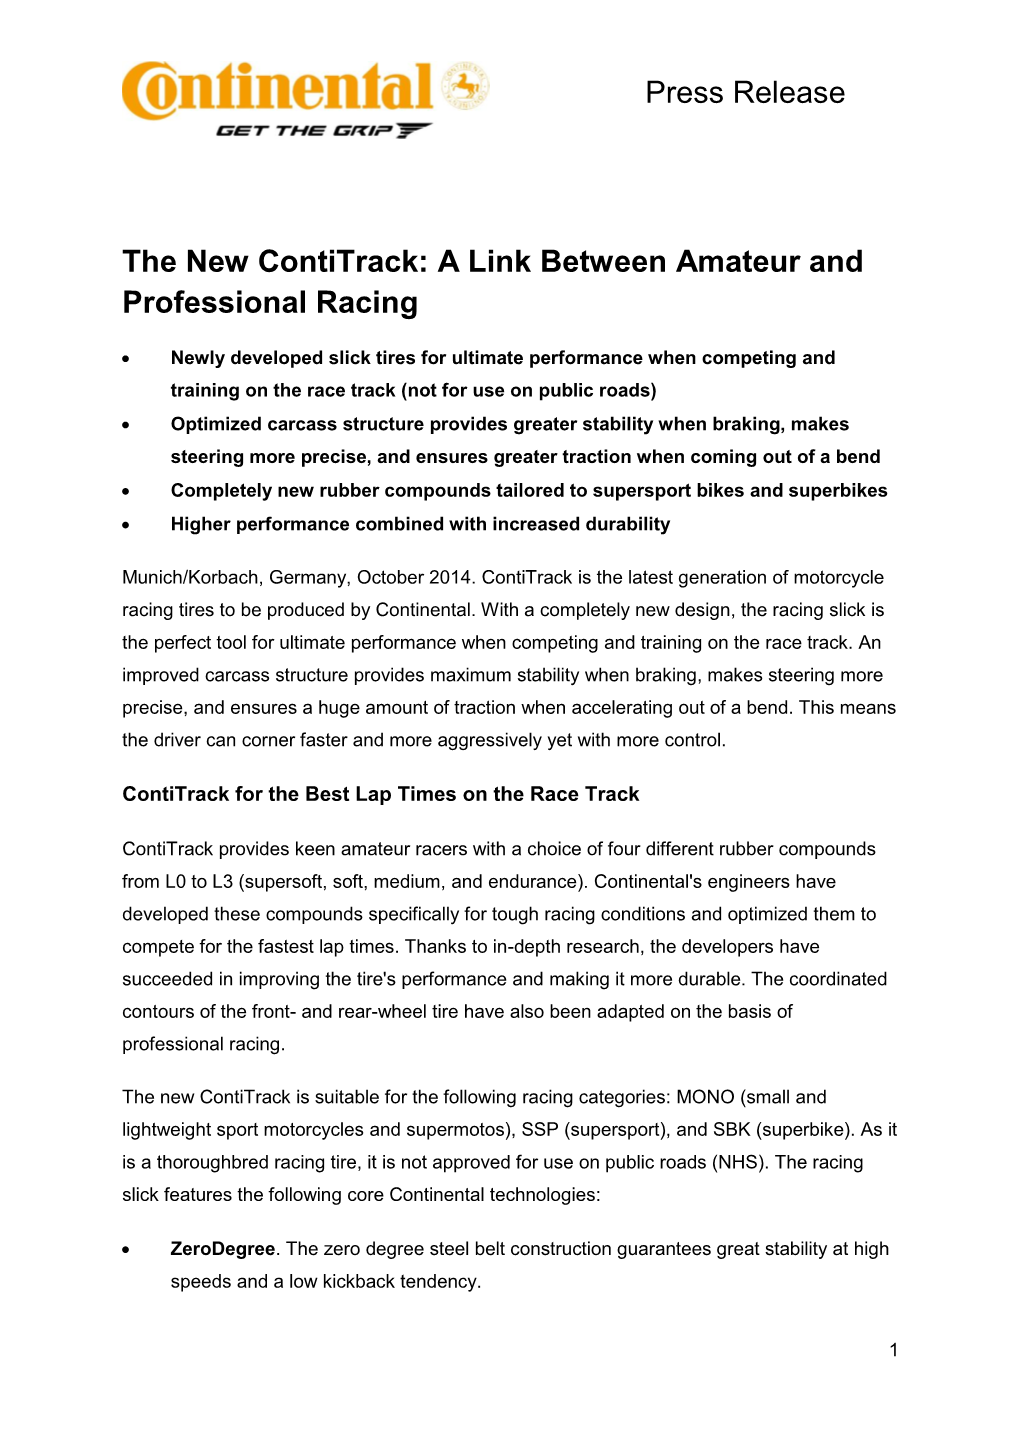 Press Release the New Contitrack